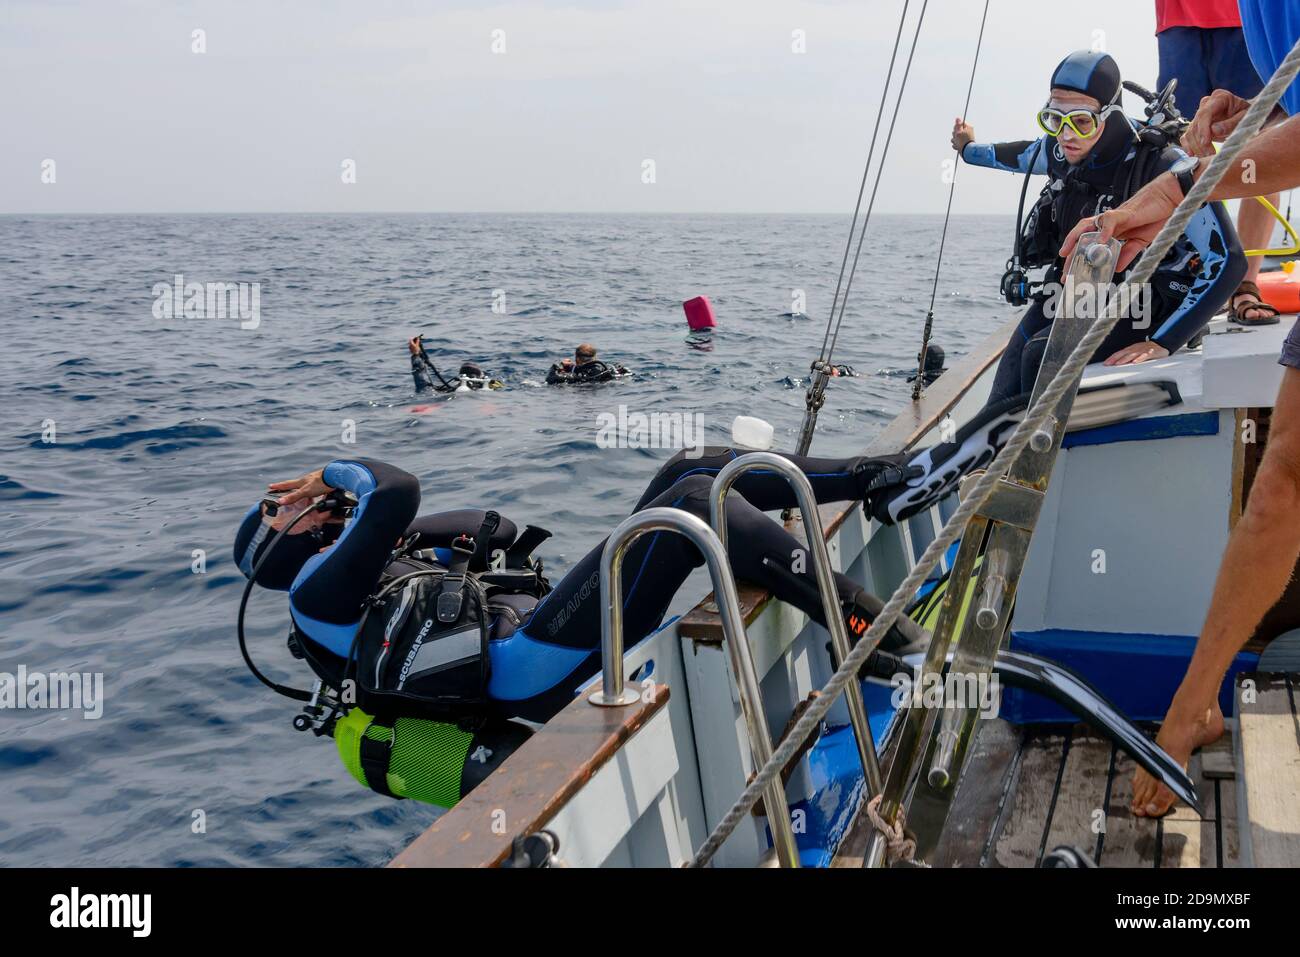 Plongée en bateau en action tout en roulant dans l'eau, Tamariu, Costa Brava, Espagne, Méditerranée Banque D'Images